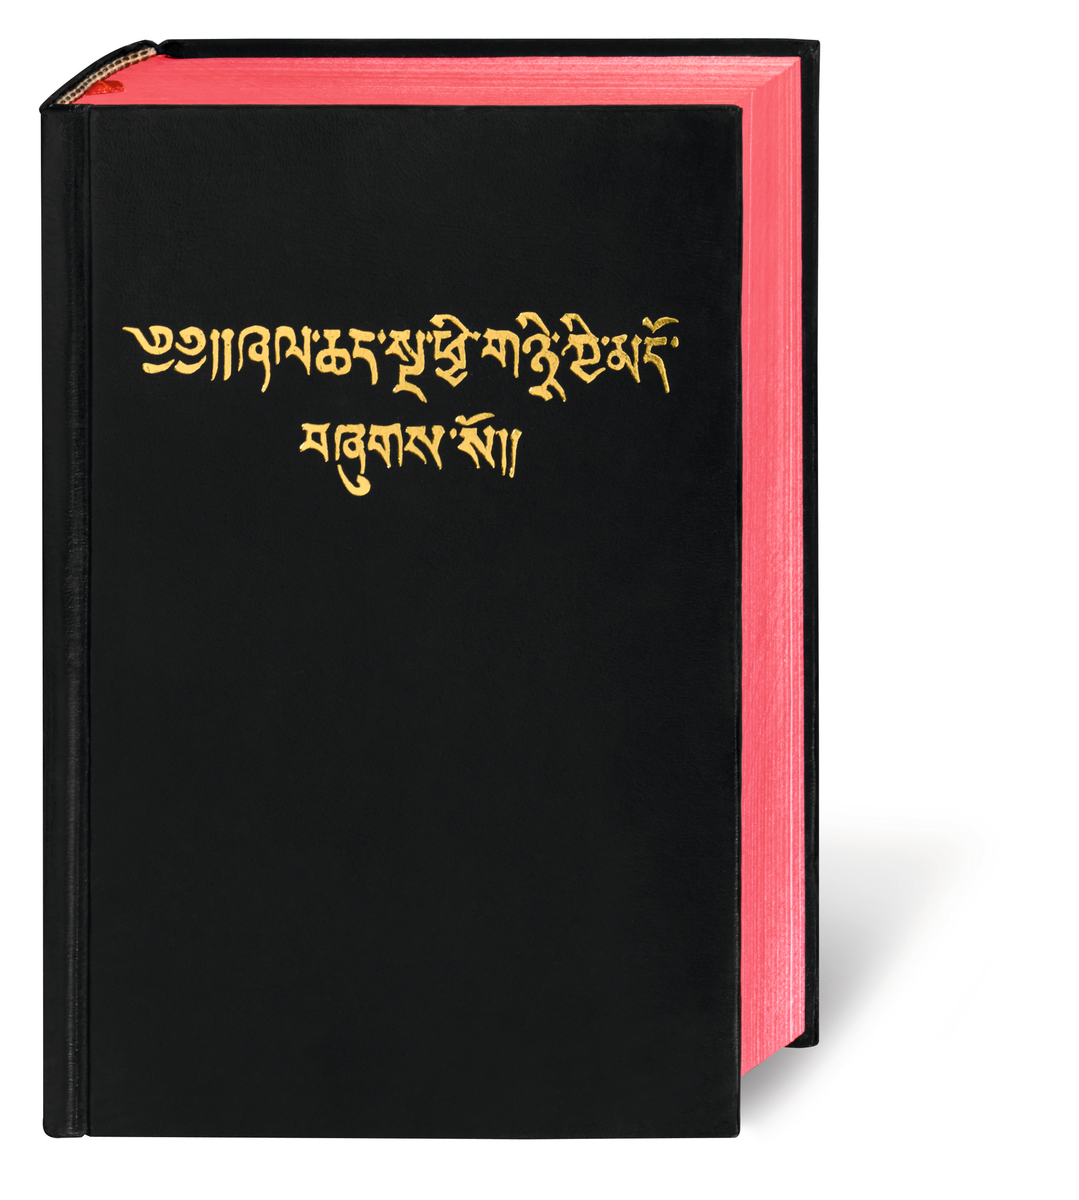 Tibetanisch